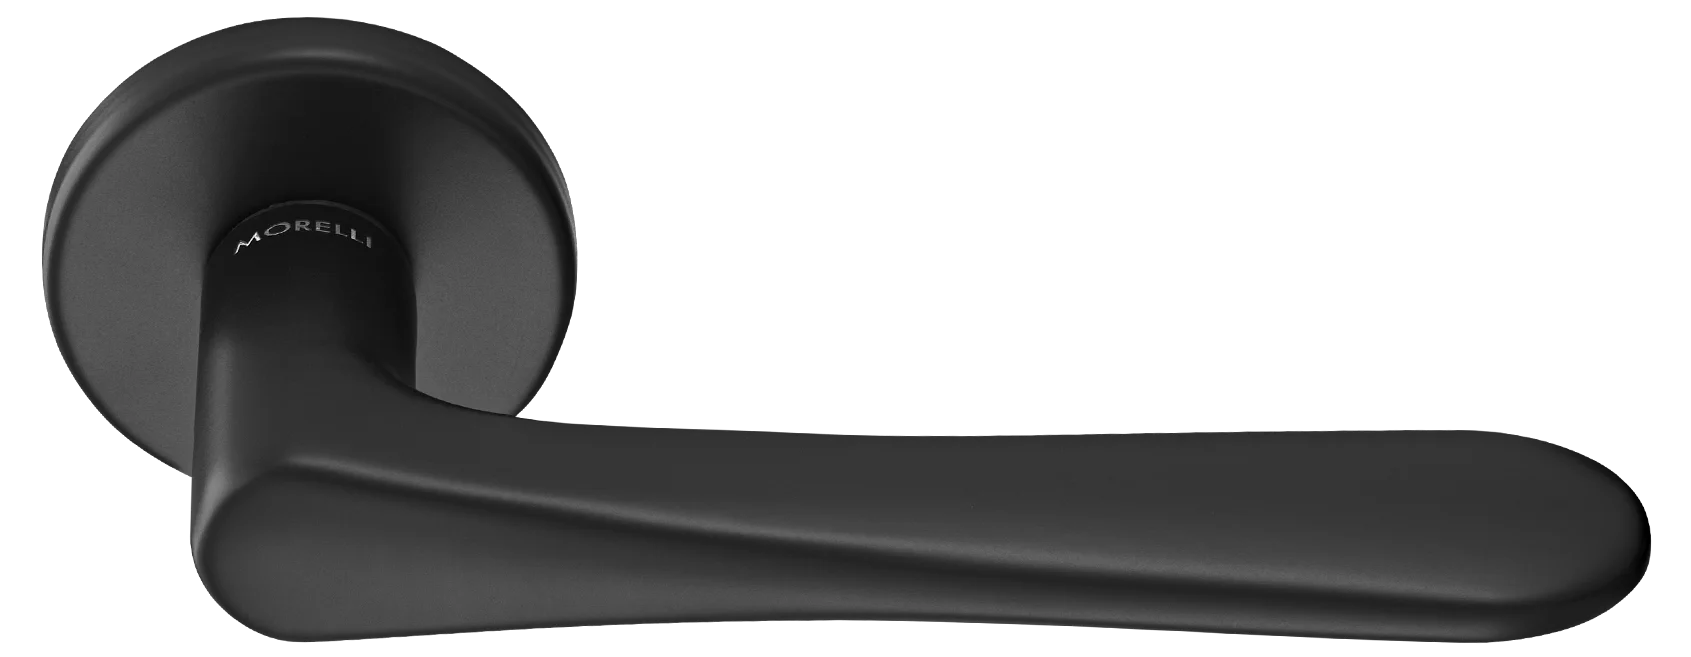 AULA R5 NERO, ручка дверная на розетке 7мм, цвет -  черный фото купить Набережные Челны